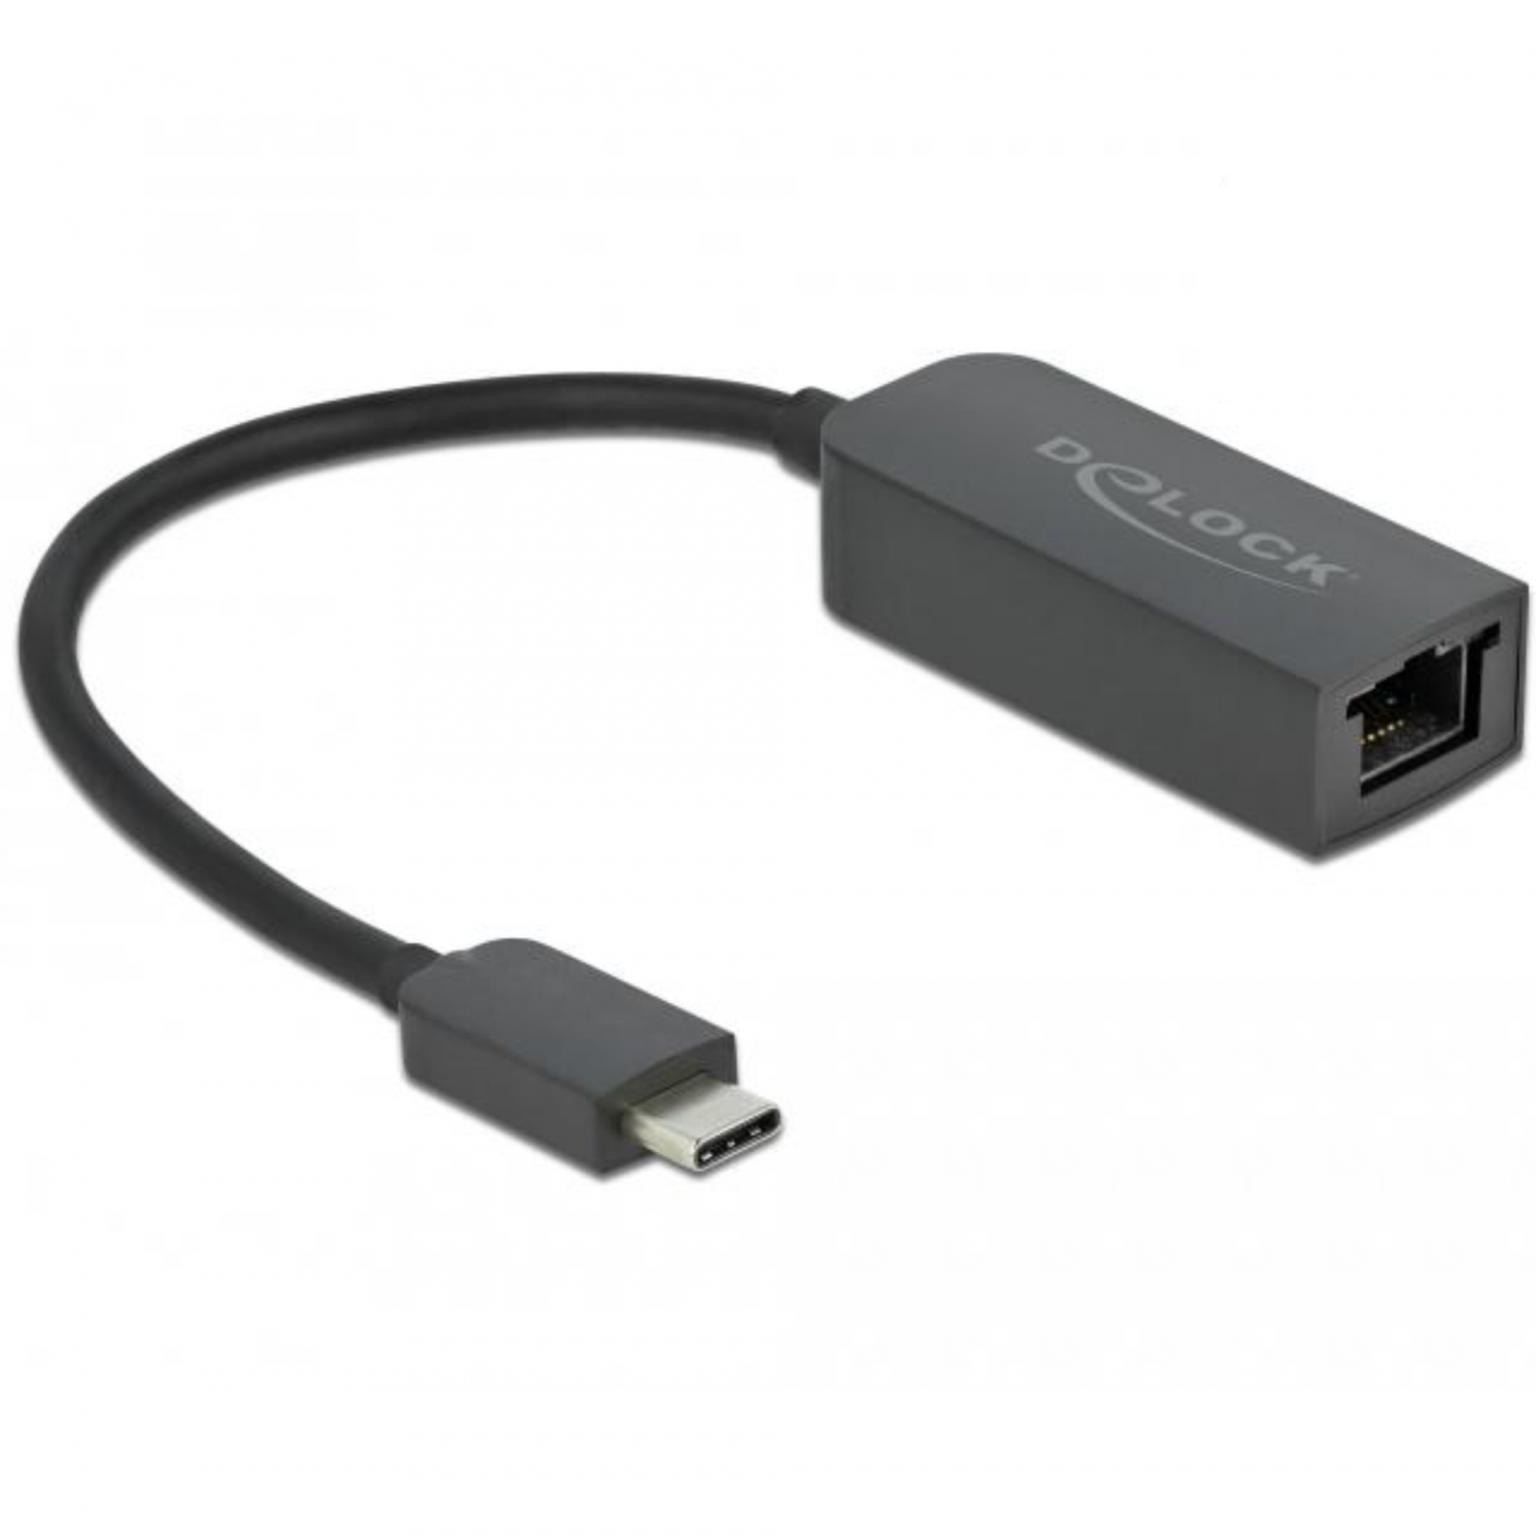 Adaptateur réseau USB - LAN - Adaptateur Gigabit Ethernet USB, Version :  USB 3.2 Gen 1x1 Connexion 1 : USB A mâle, Connexion 2 : RJ45 femelle,  Convient pour : Windows, Mac OS, Vitesse : 1000 Mb/s.